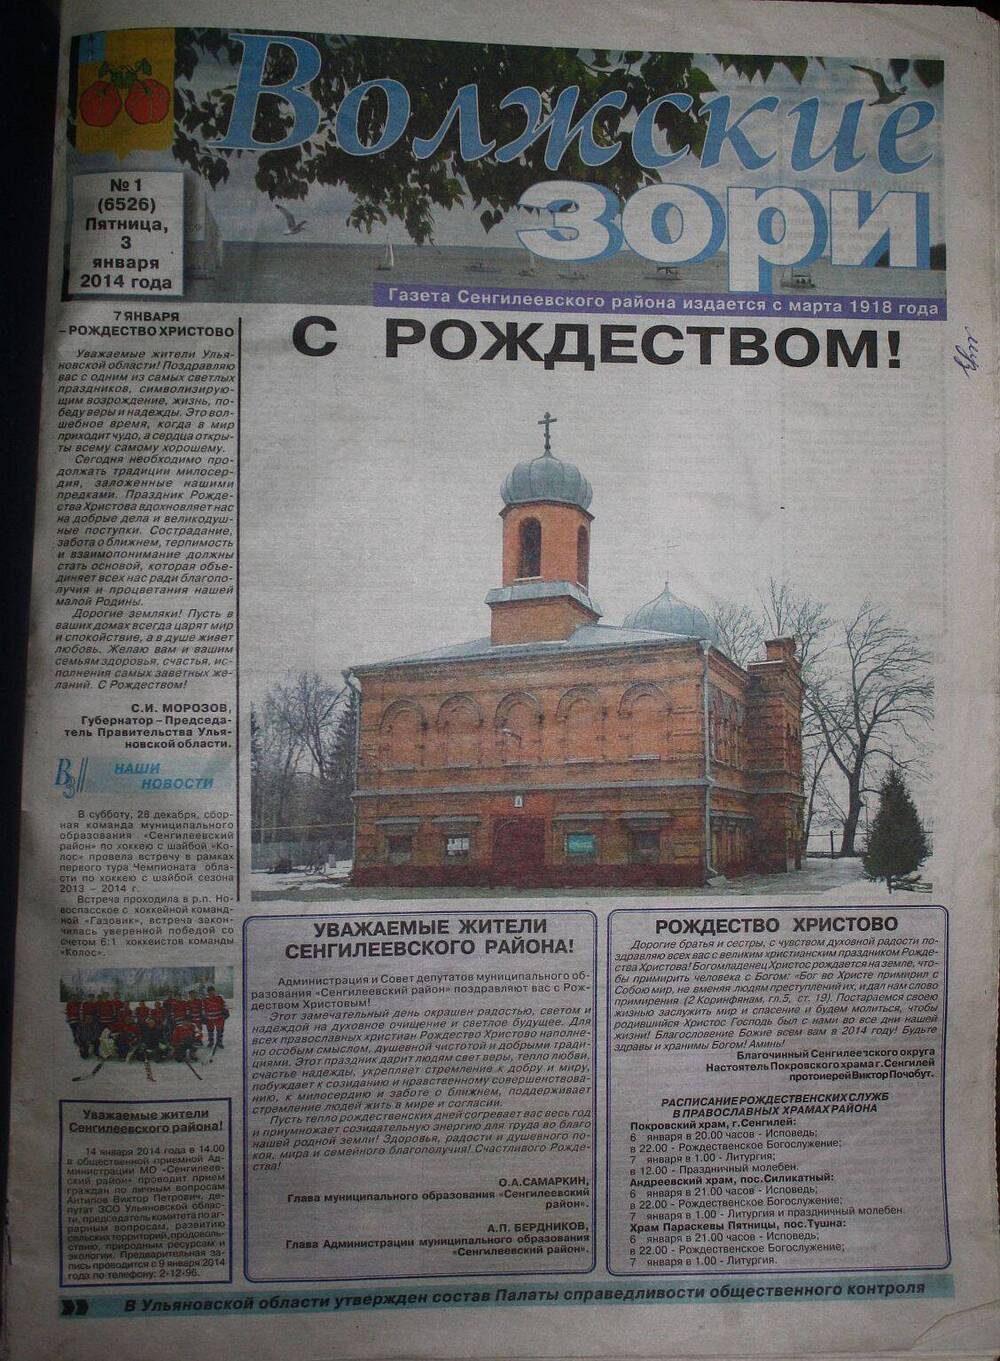 Подшивка газеты Волжские зори за 2014 г